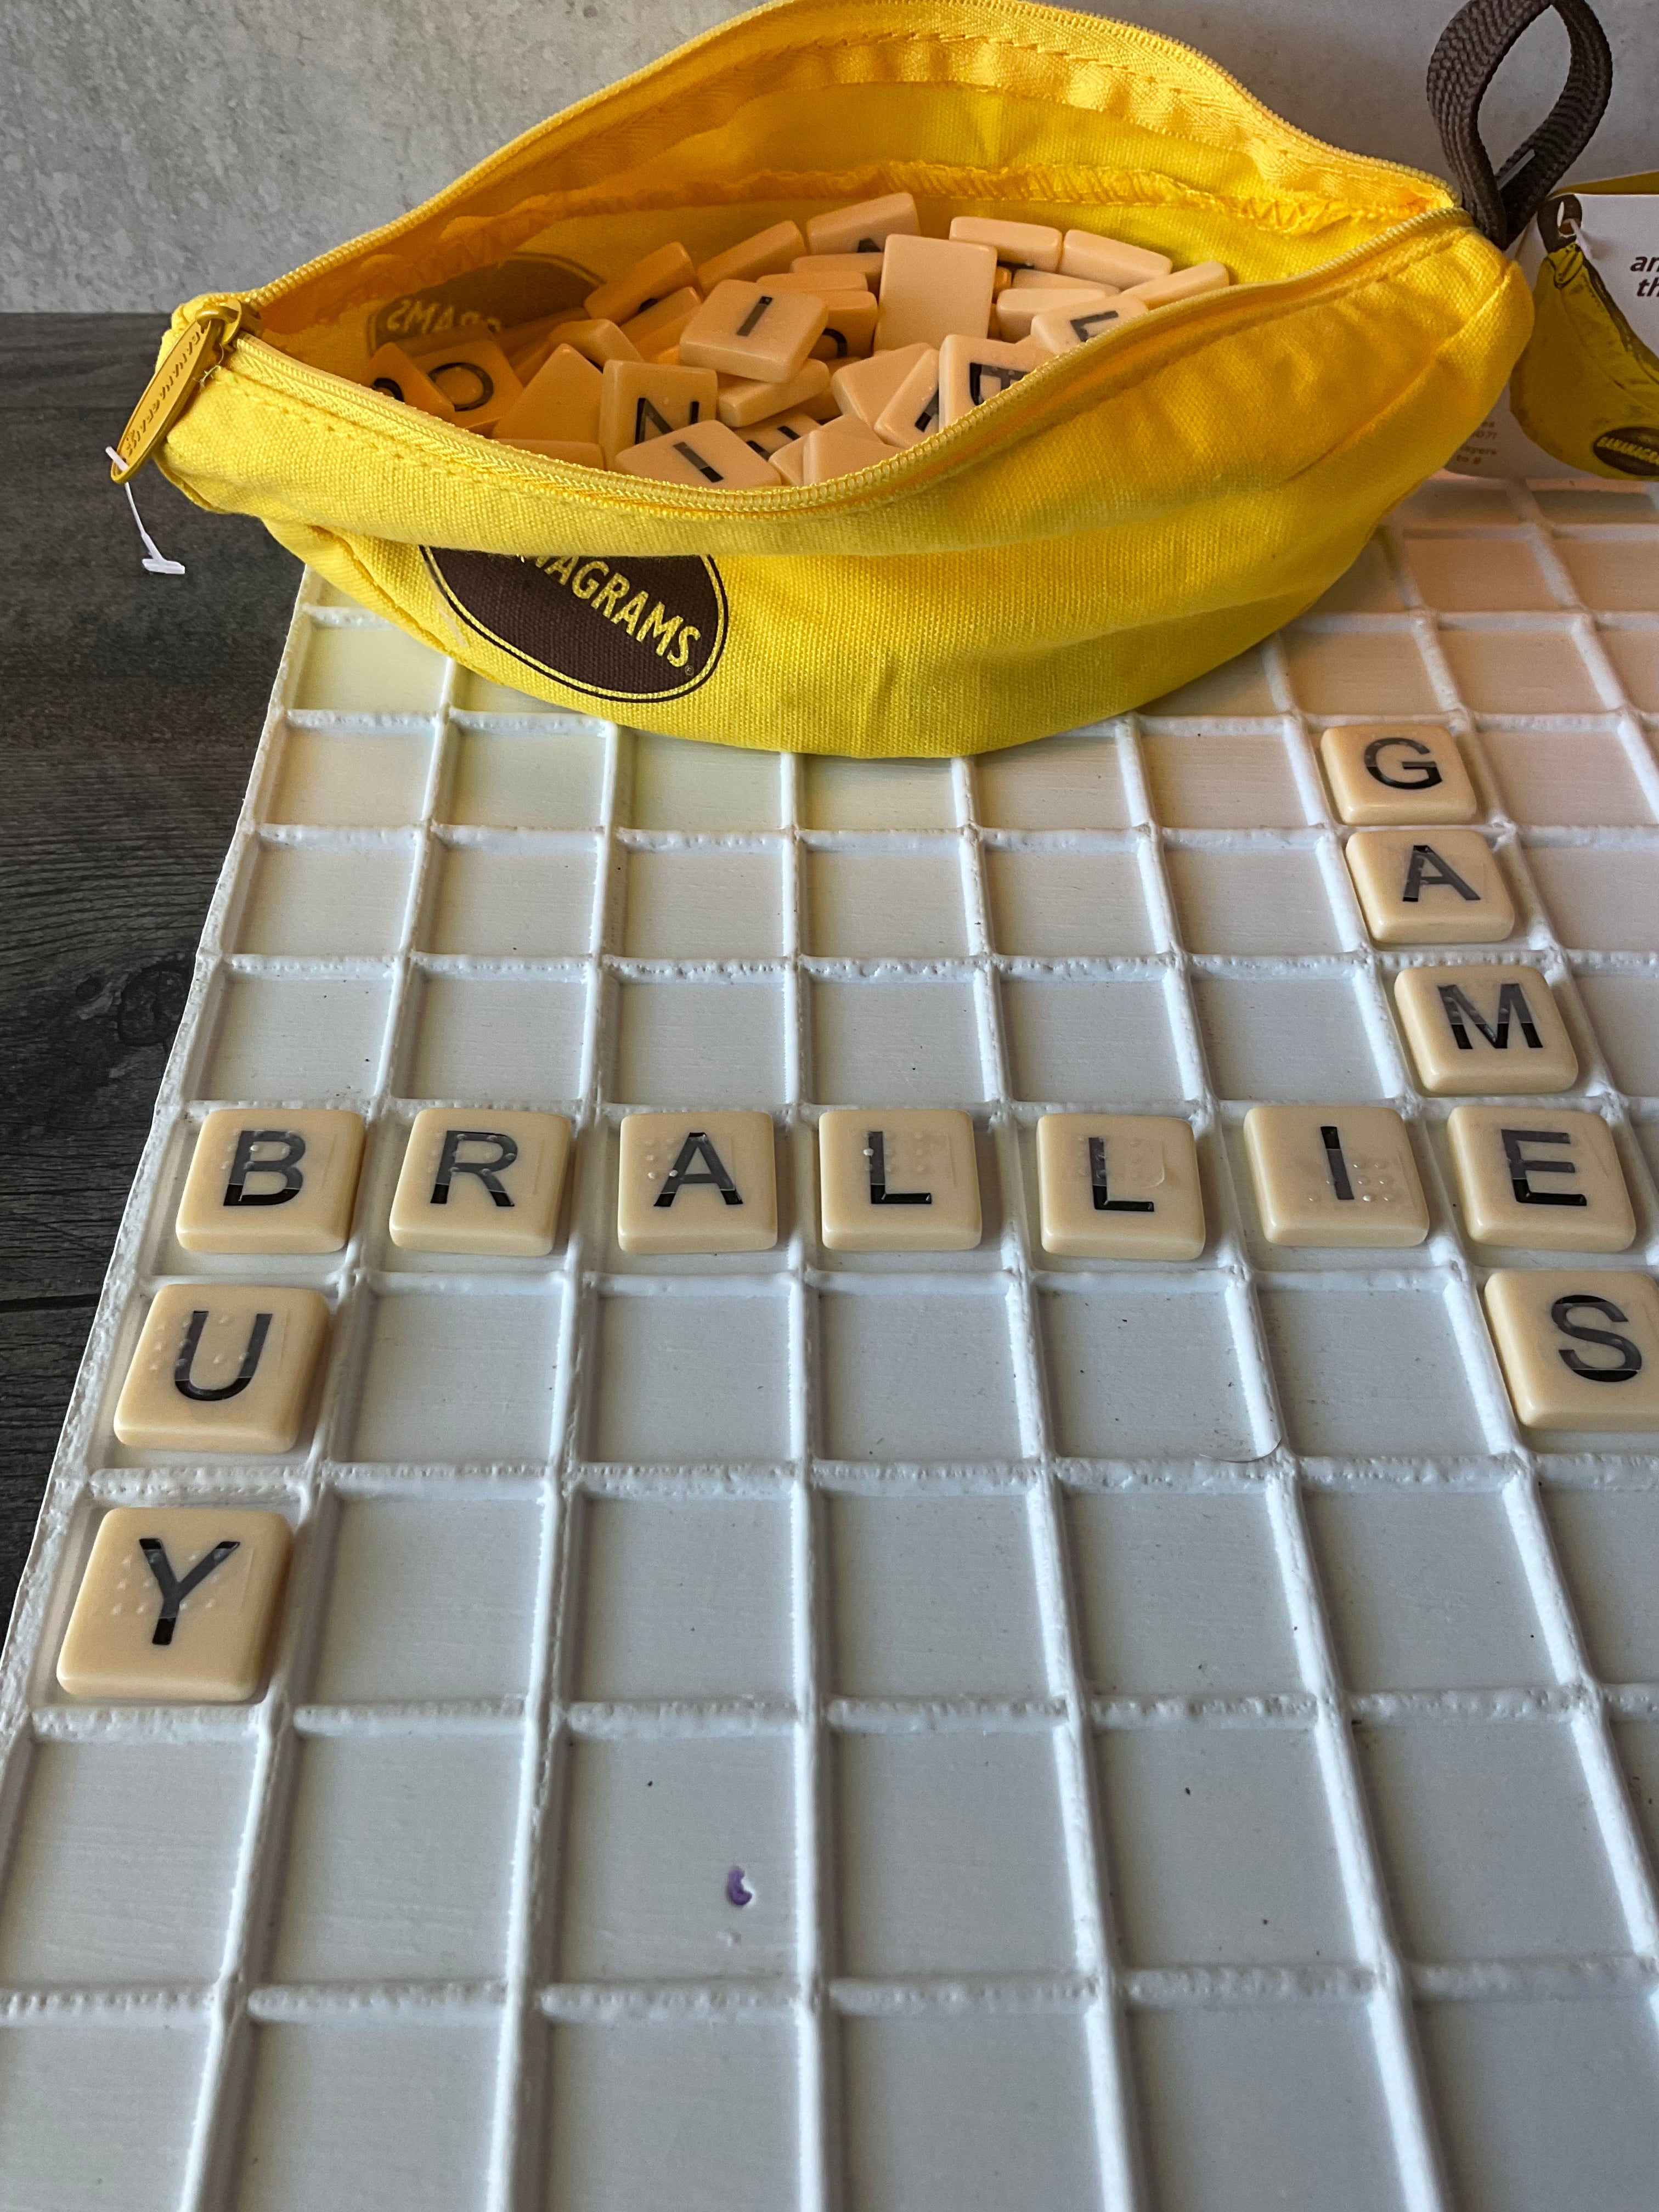 Bananagrams, Board Game